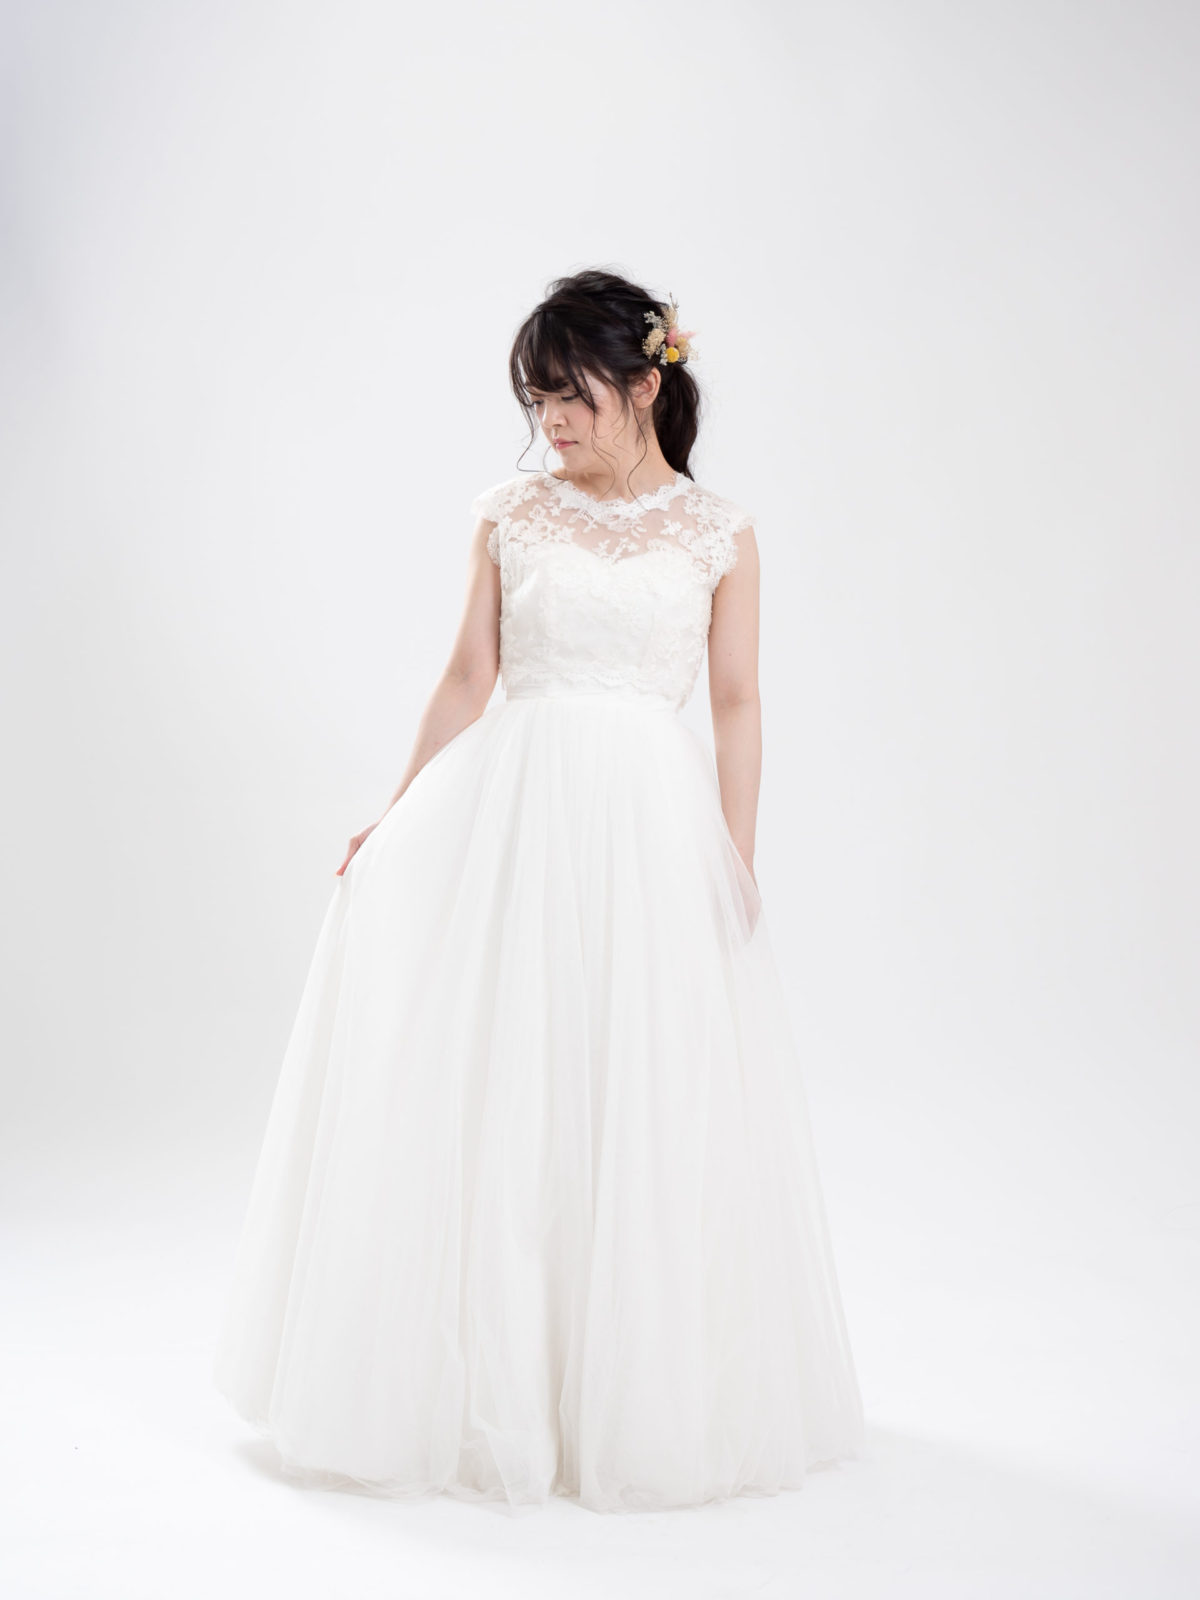 Weddingdress_027 | ウェディングドレス・カラードレスの格安レンタル | 福岡・九州でフォトウェディング・前撮りなら